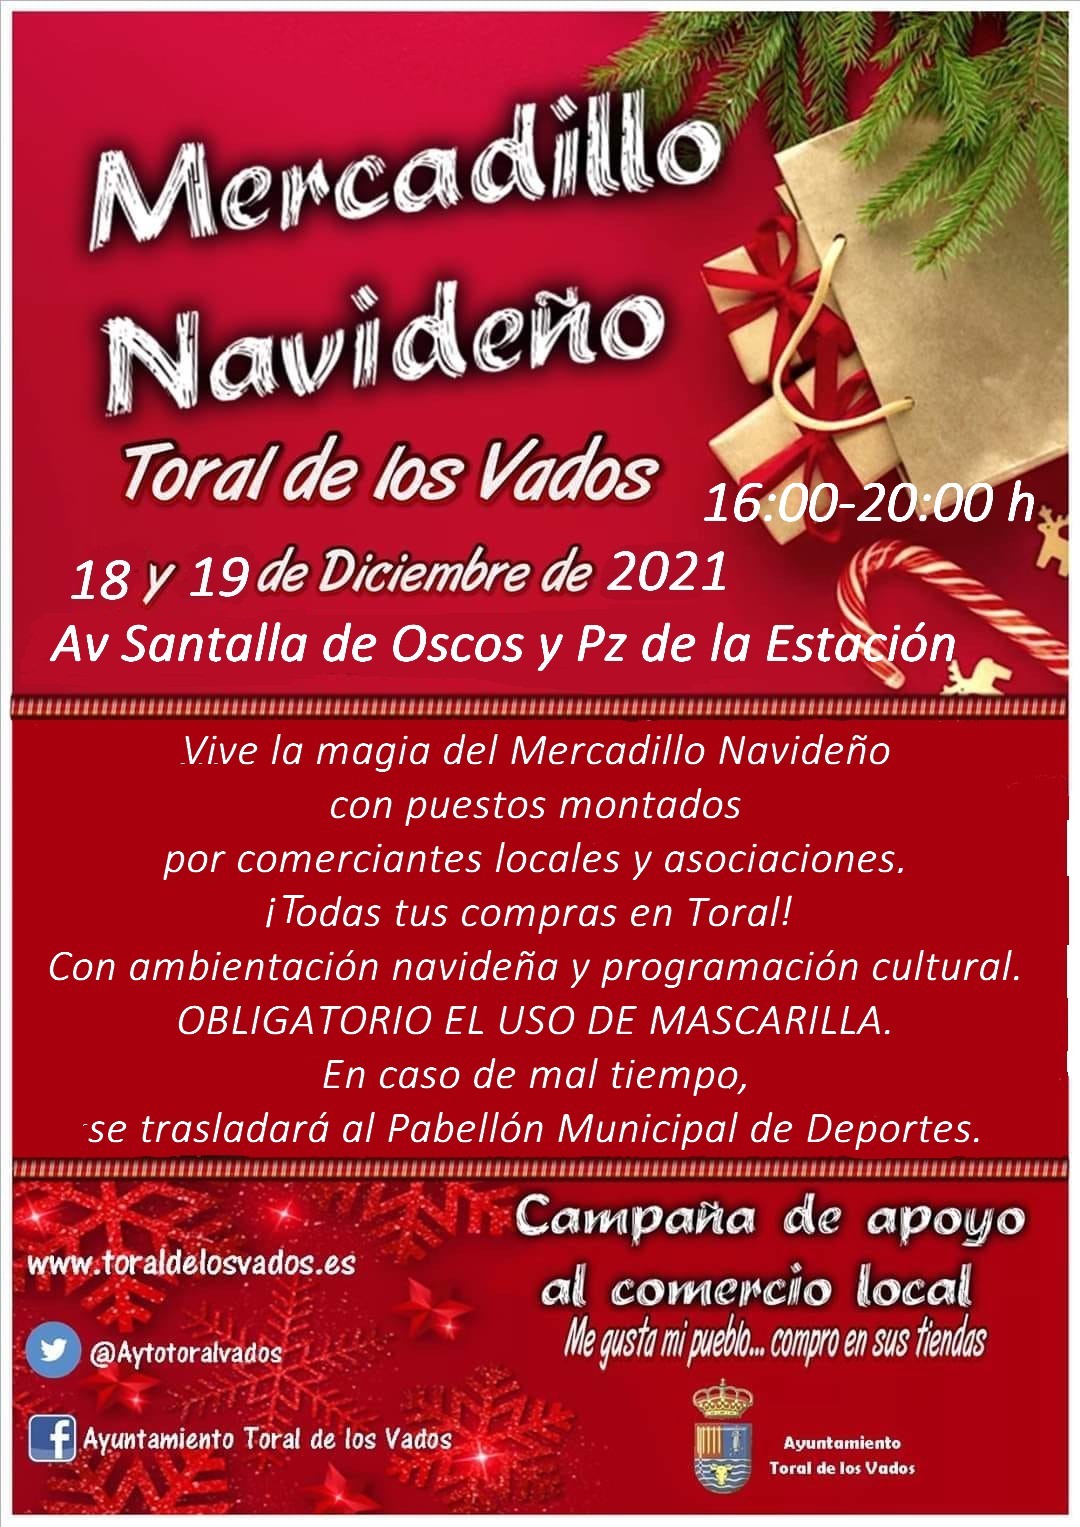 Toral de los Vados organiza mercadillo navideño el 18 y 19 de diciembre 2